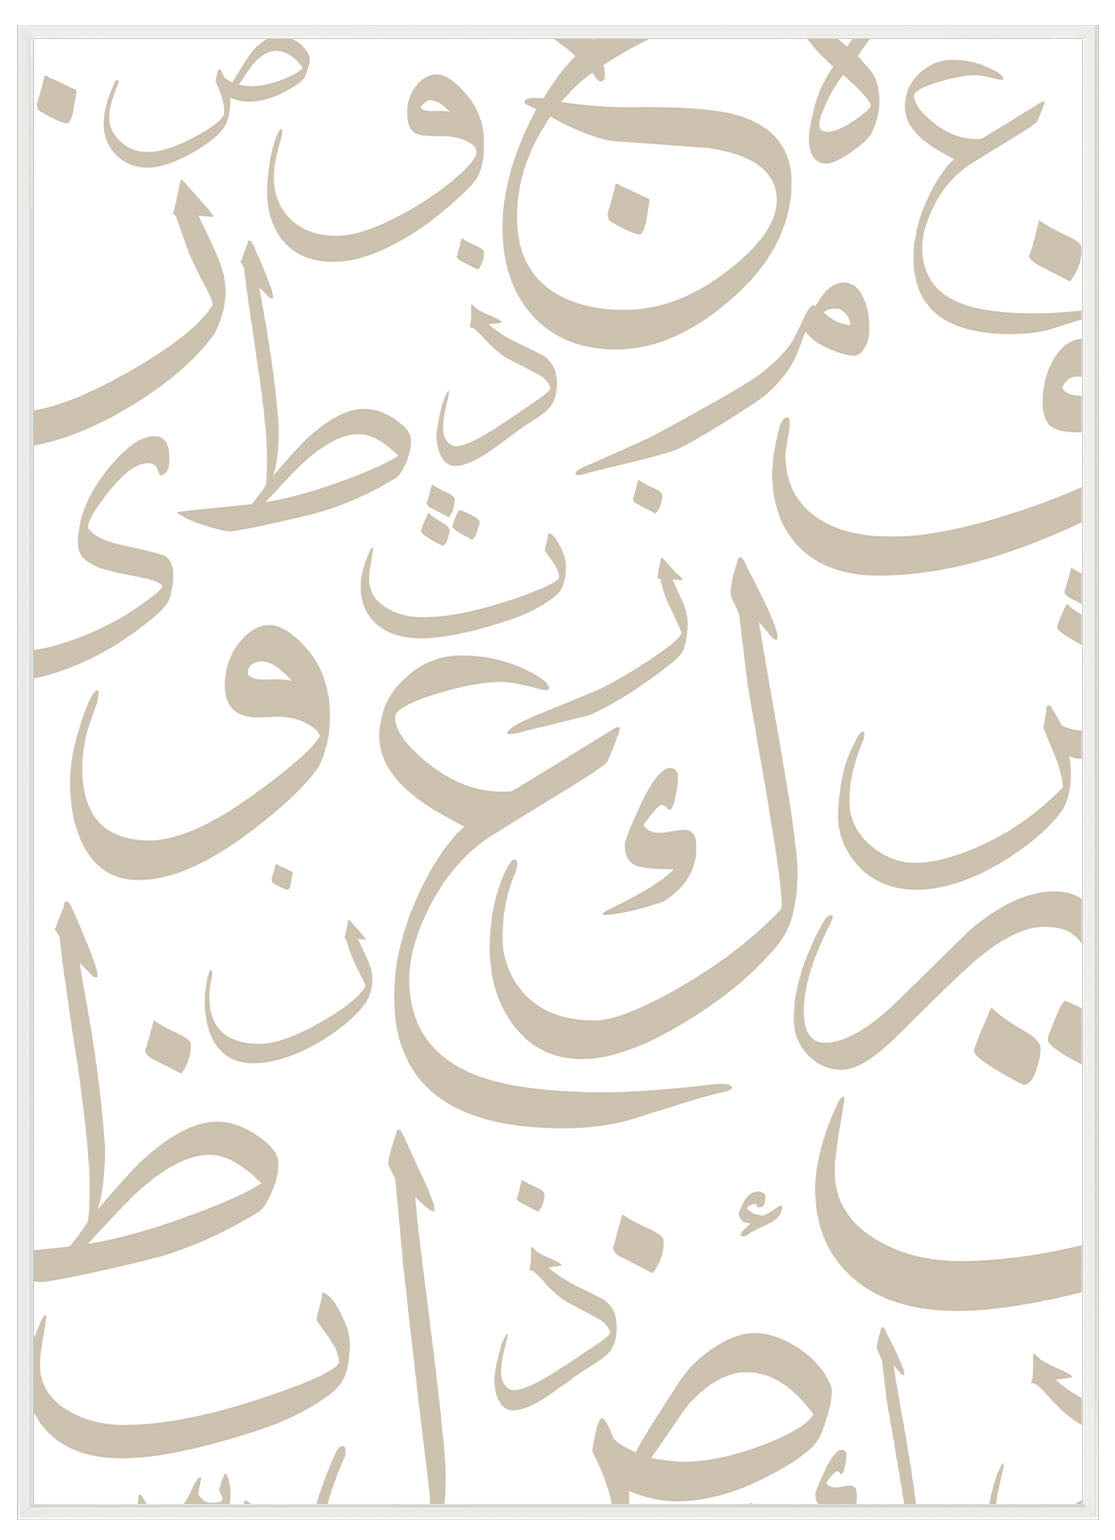 Arabiska alfabetet